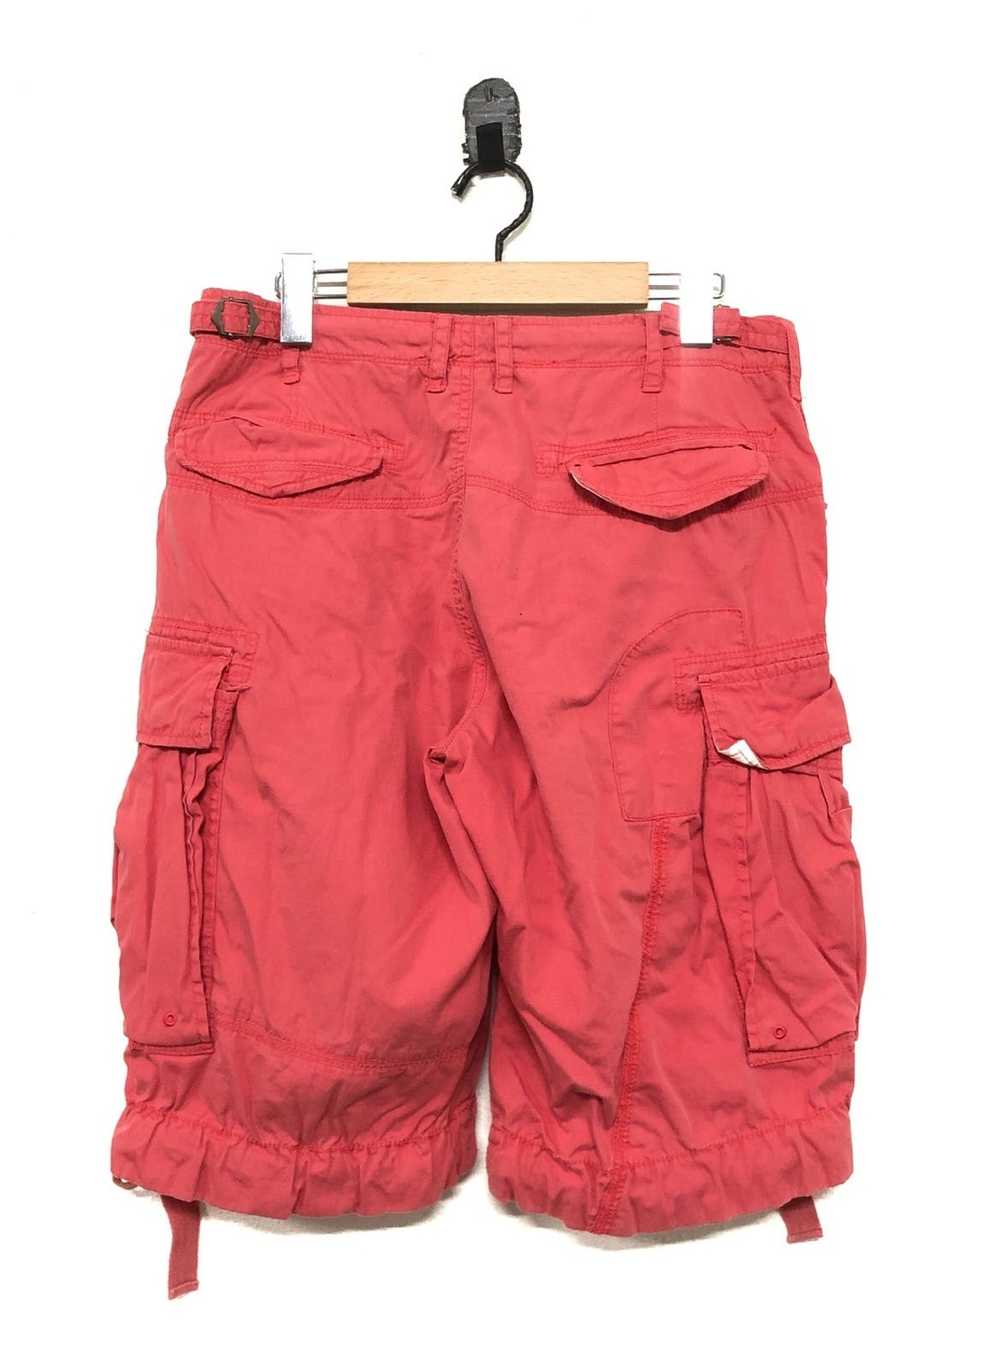 Japanese Brand Ganesh Cargo Shorts pant - image 2